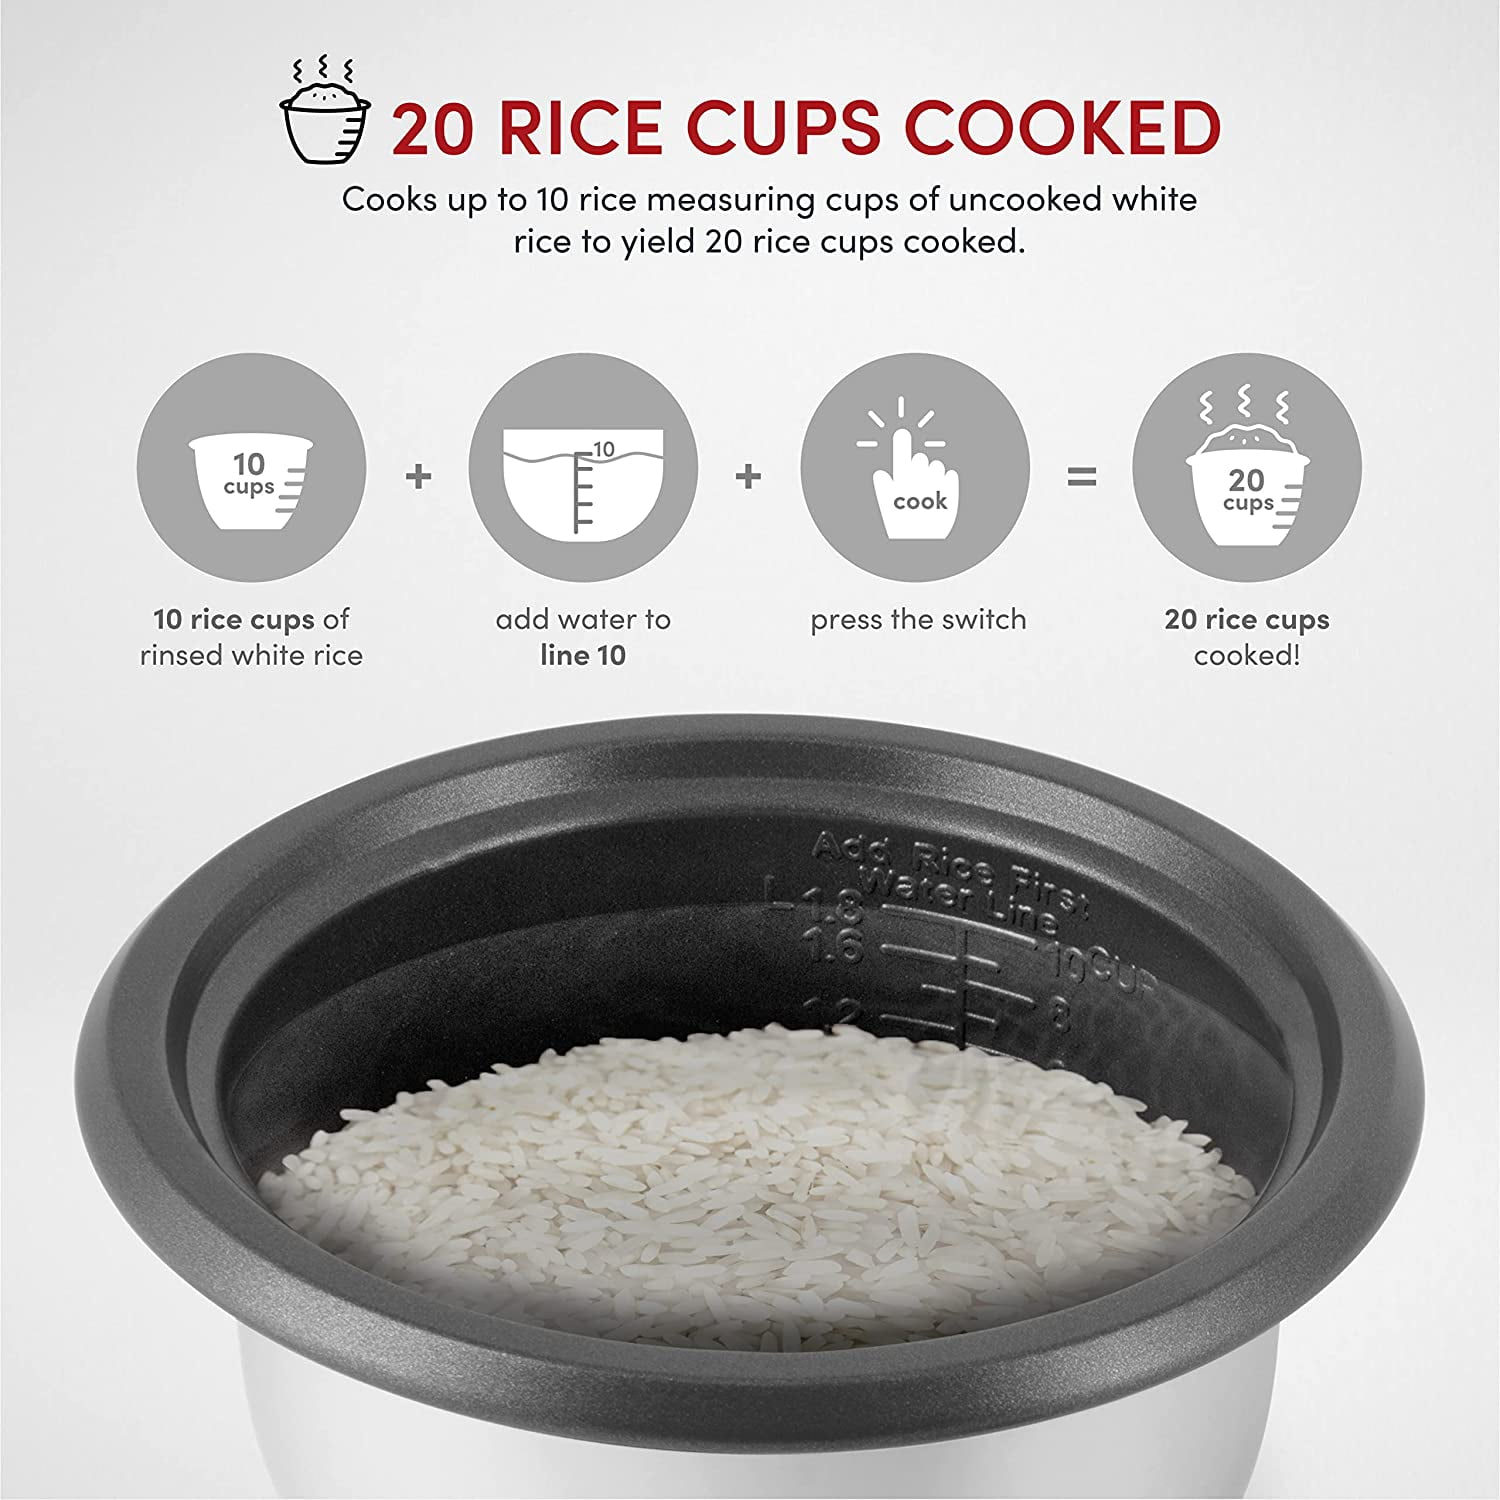 Aroma Housewares 160oz Rice Cooker & Food Steamer Arc-360-ngp Refurbished  White : Target